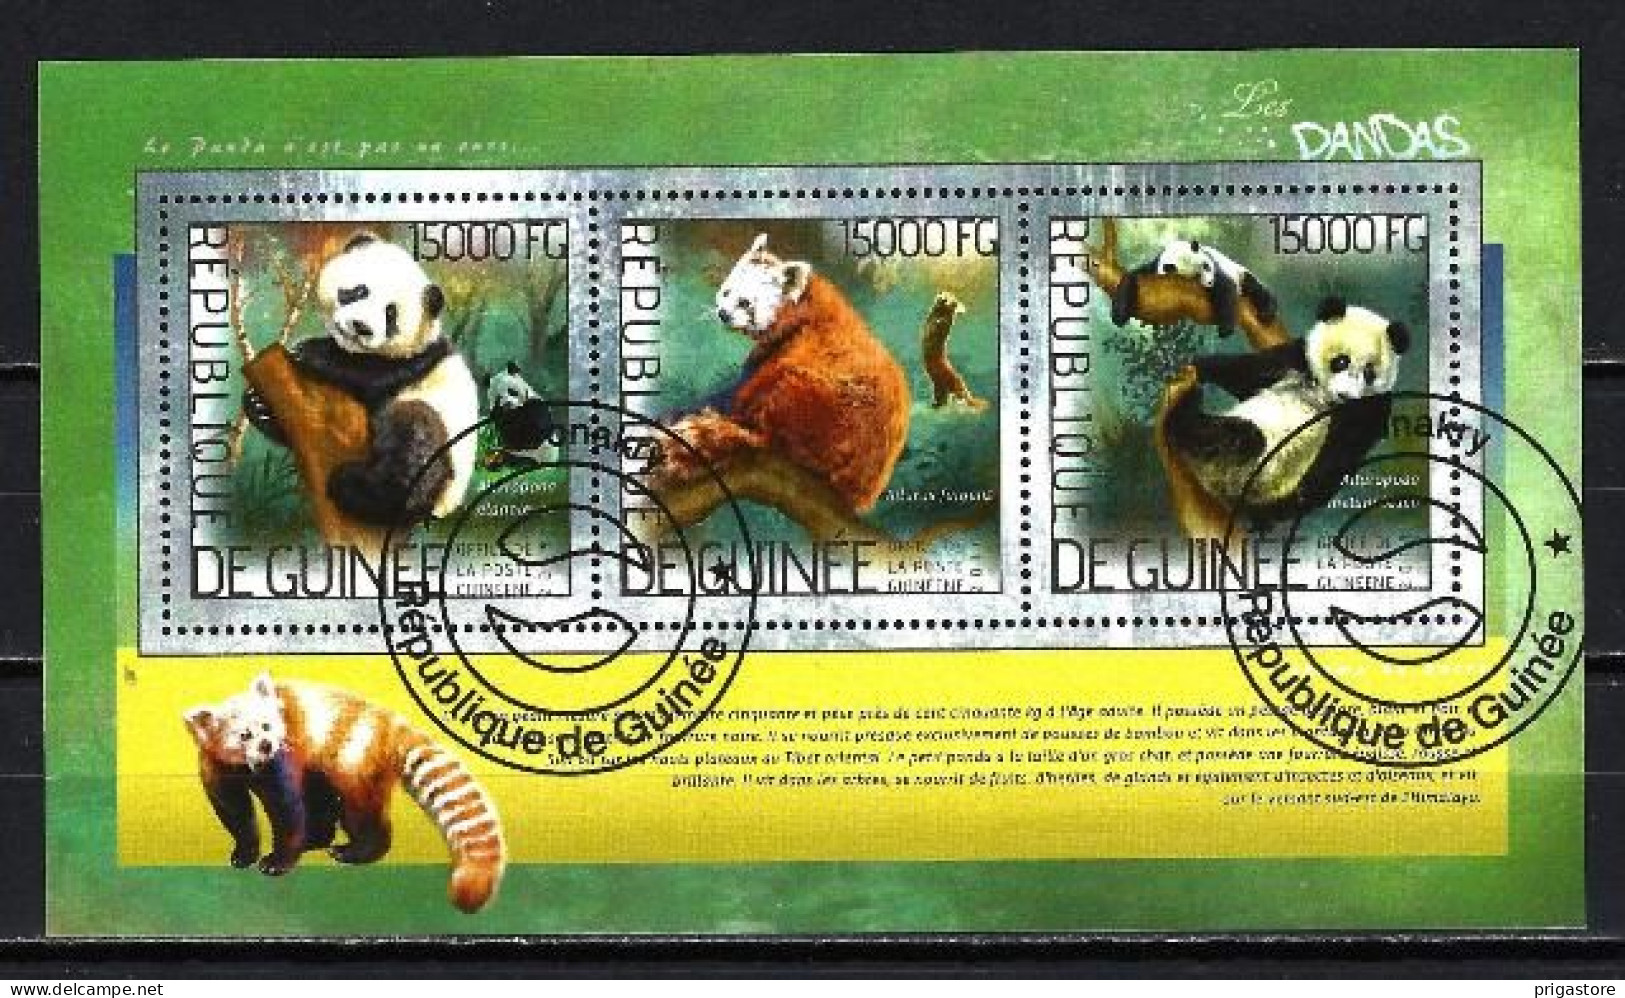 Animaux Pandas Guinée 2014 (266) Yvert N° 7199 à 7201 Oblitérés Used - Bears